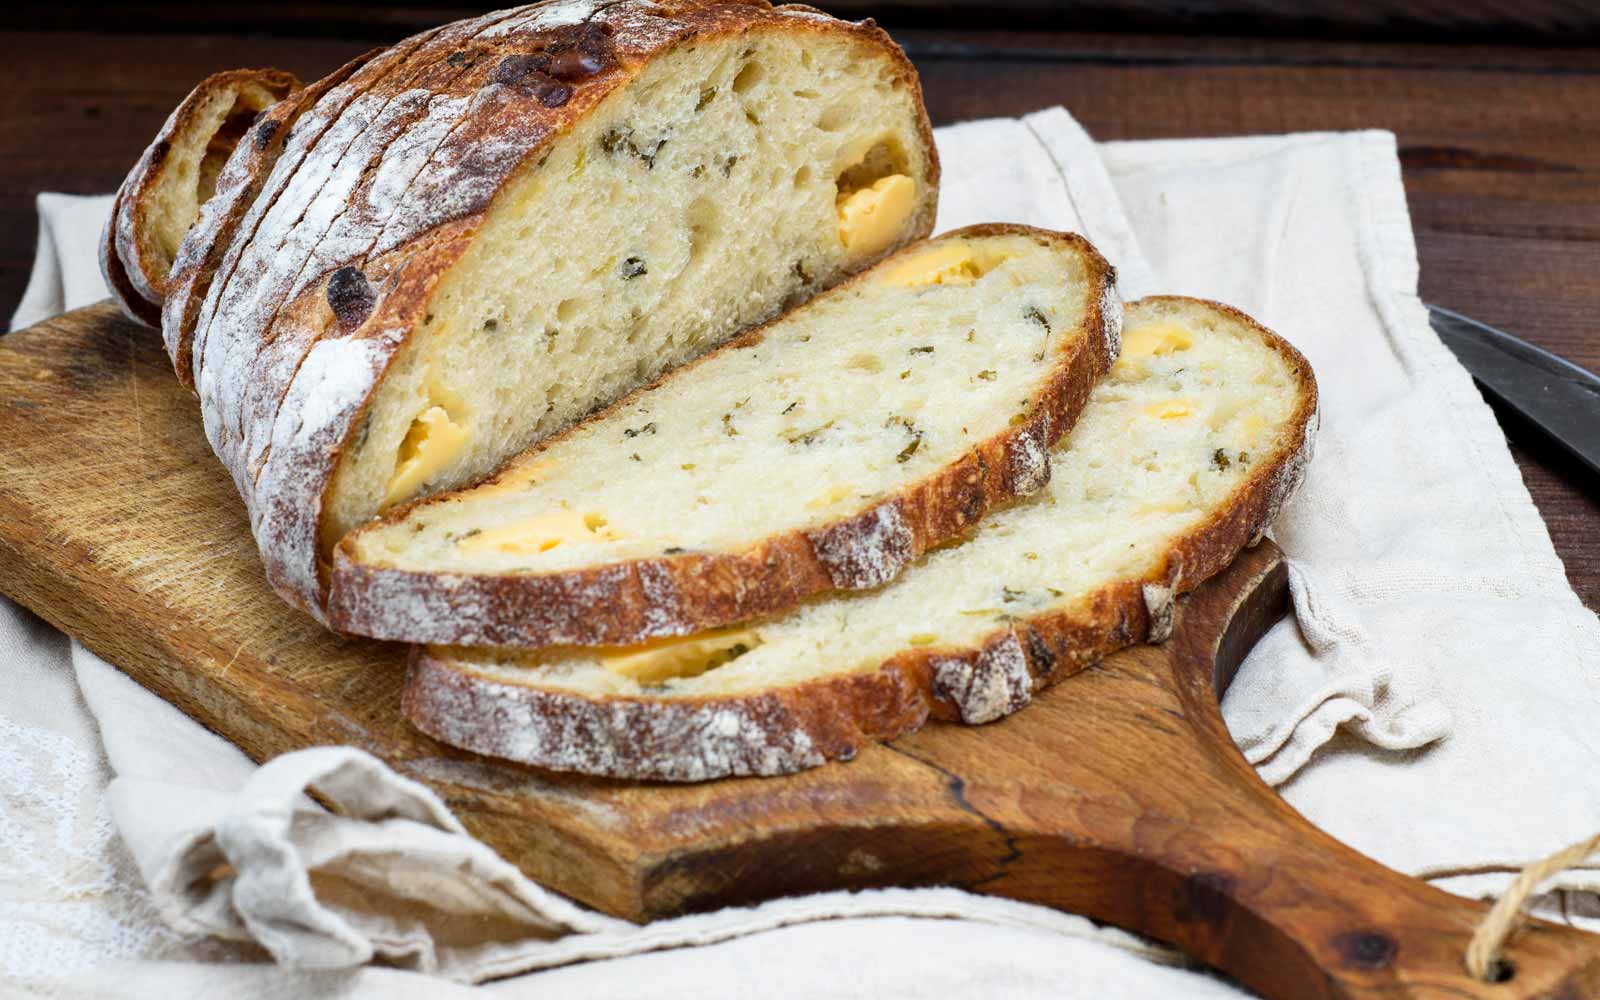 Brauche Beim Hausbau Teil 4 Brot Und Salz Immovation News Blog